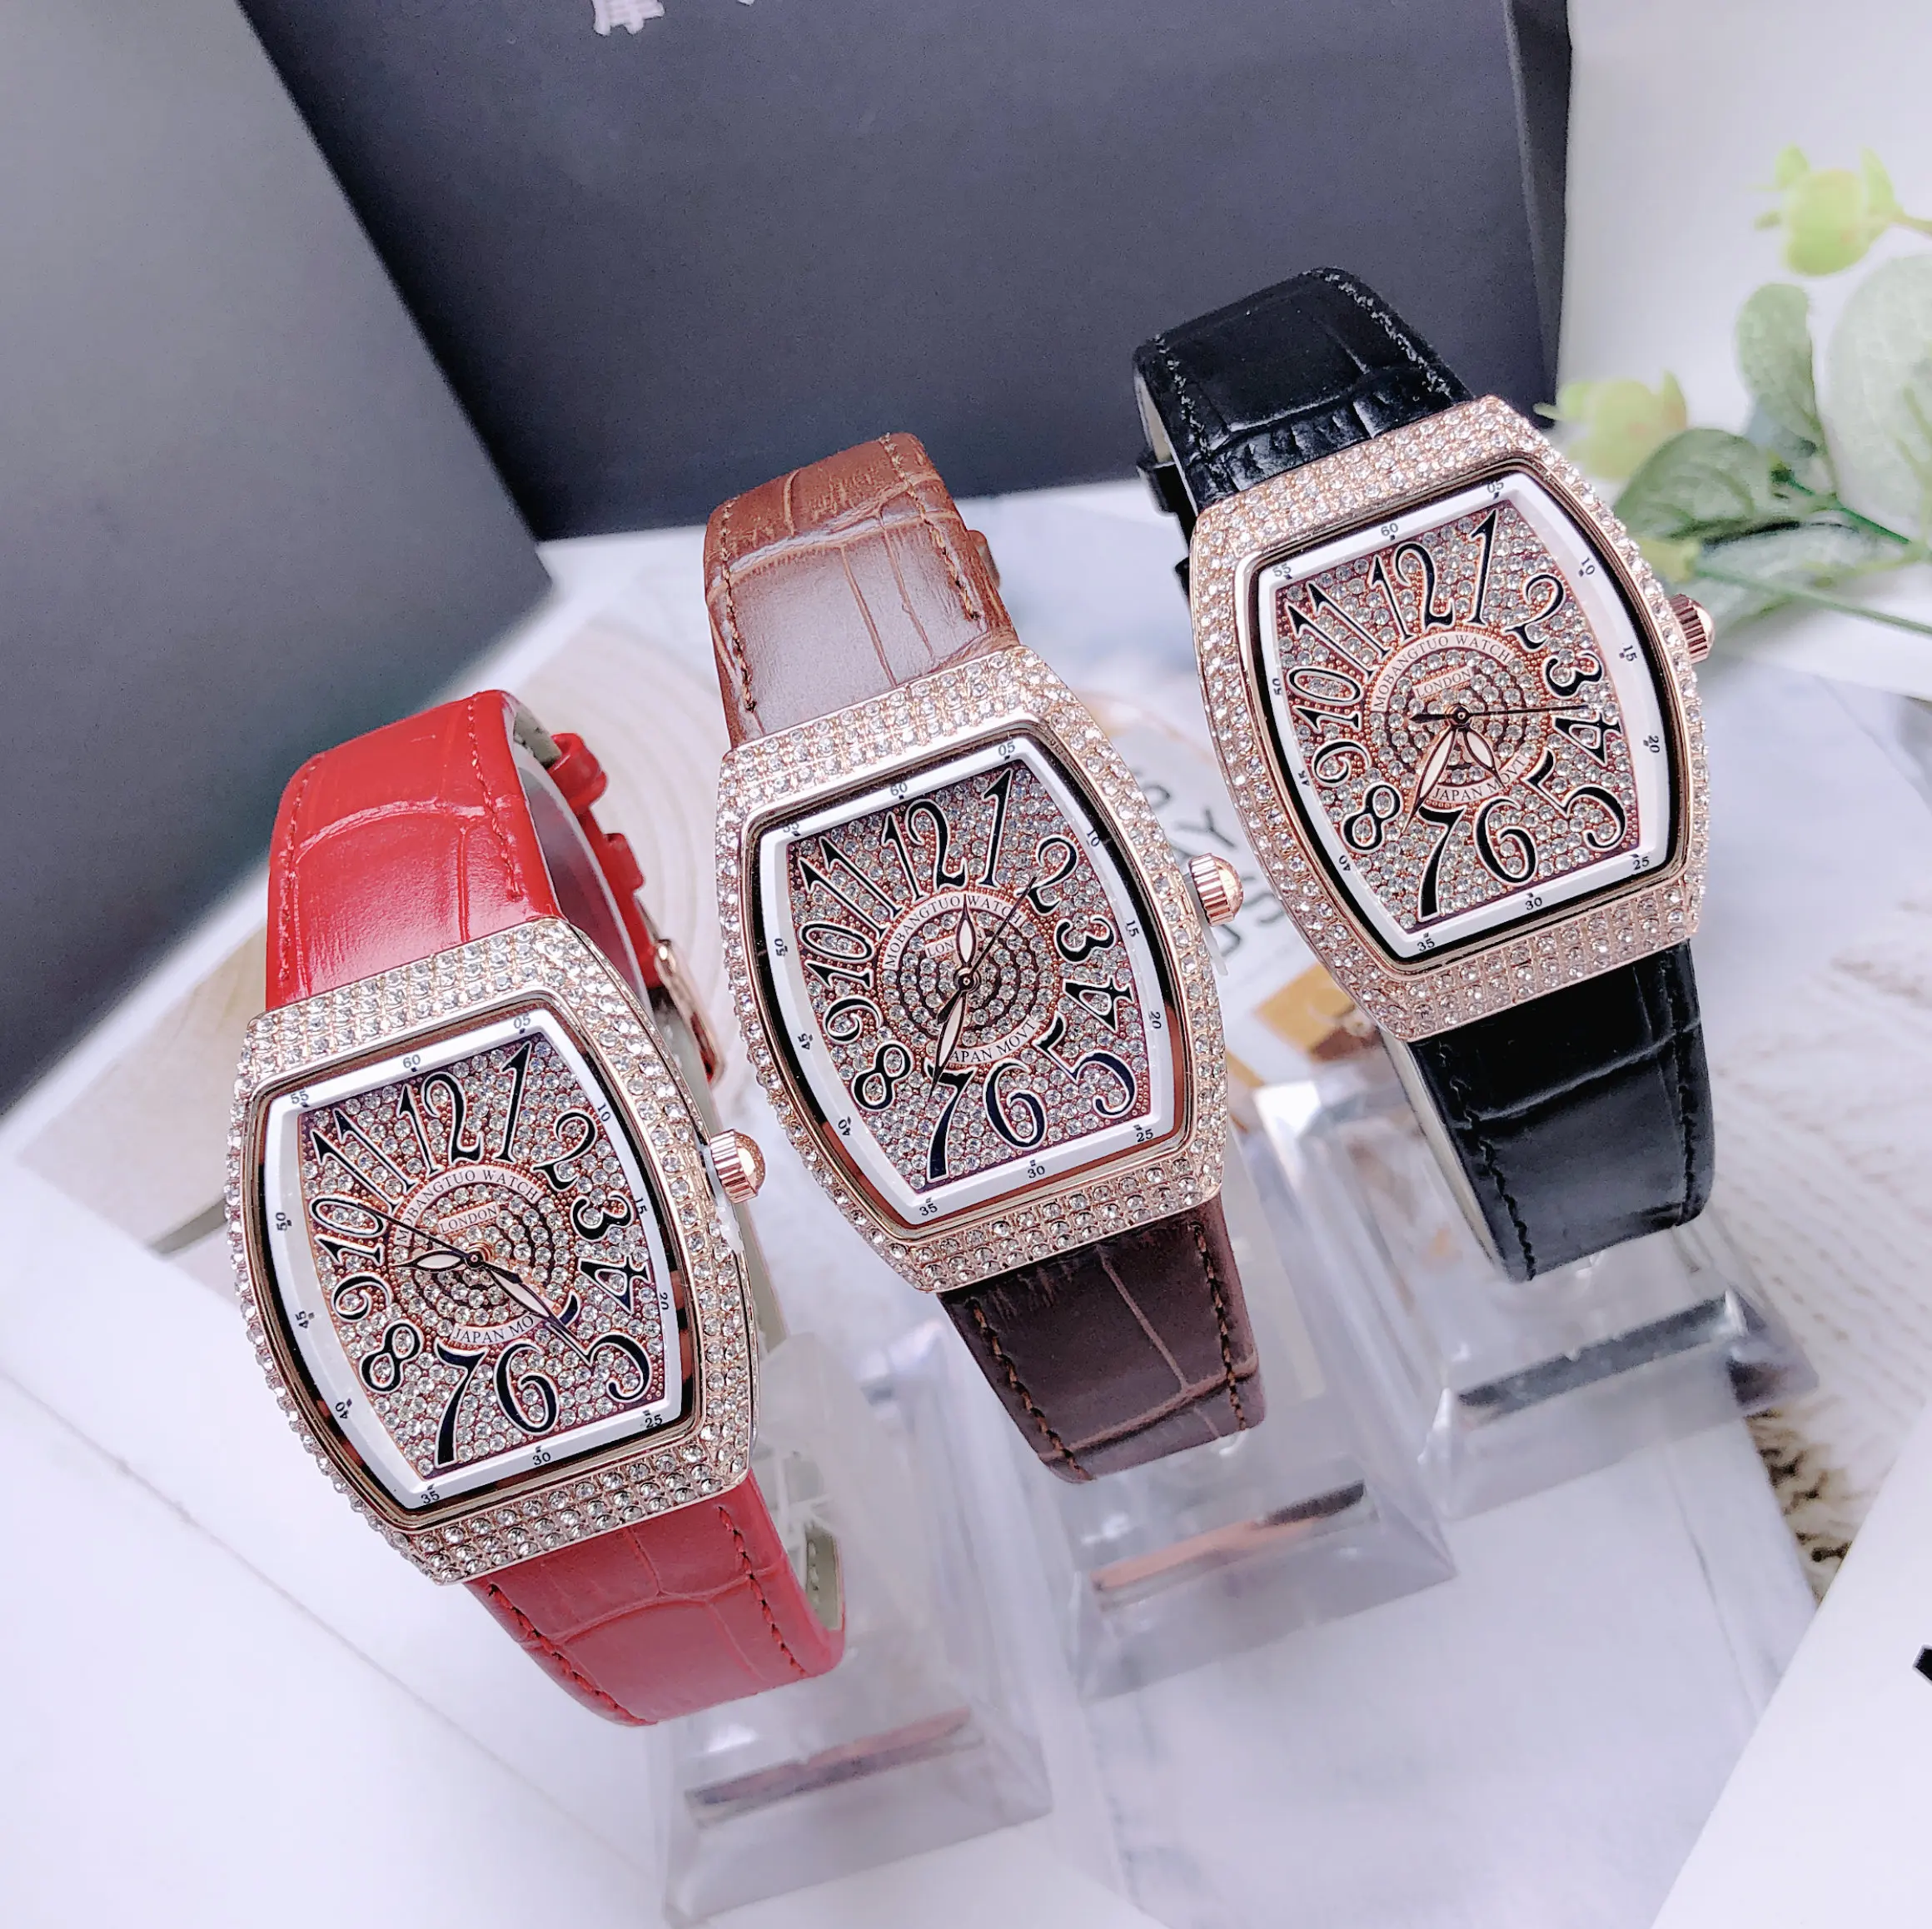 

Топ Бренд роскошные полностью алмазные Женские часы высокого качества розовое золото часы для женщин с Стразы Tonneau наручные часы MBT118